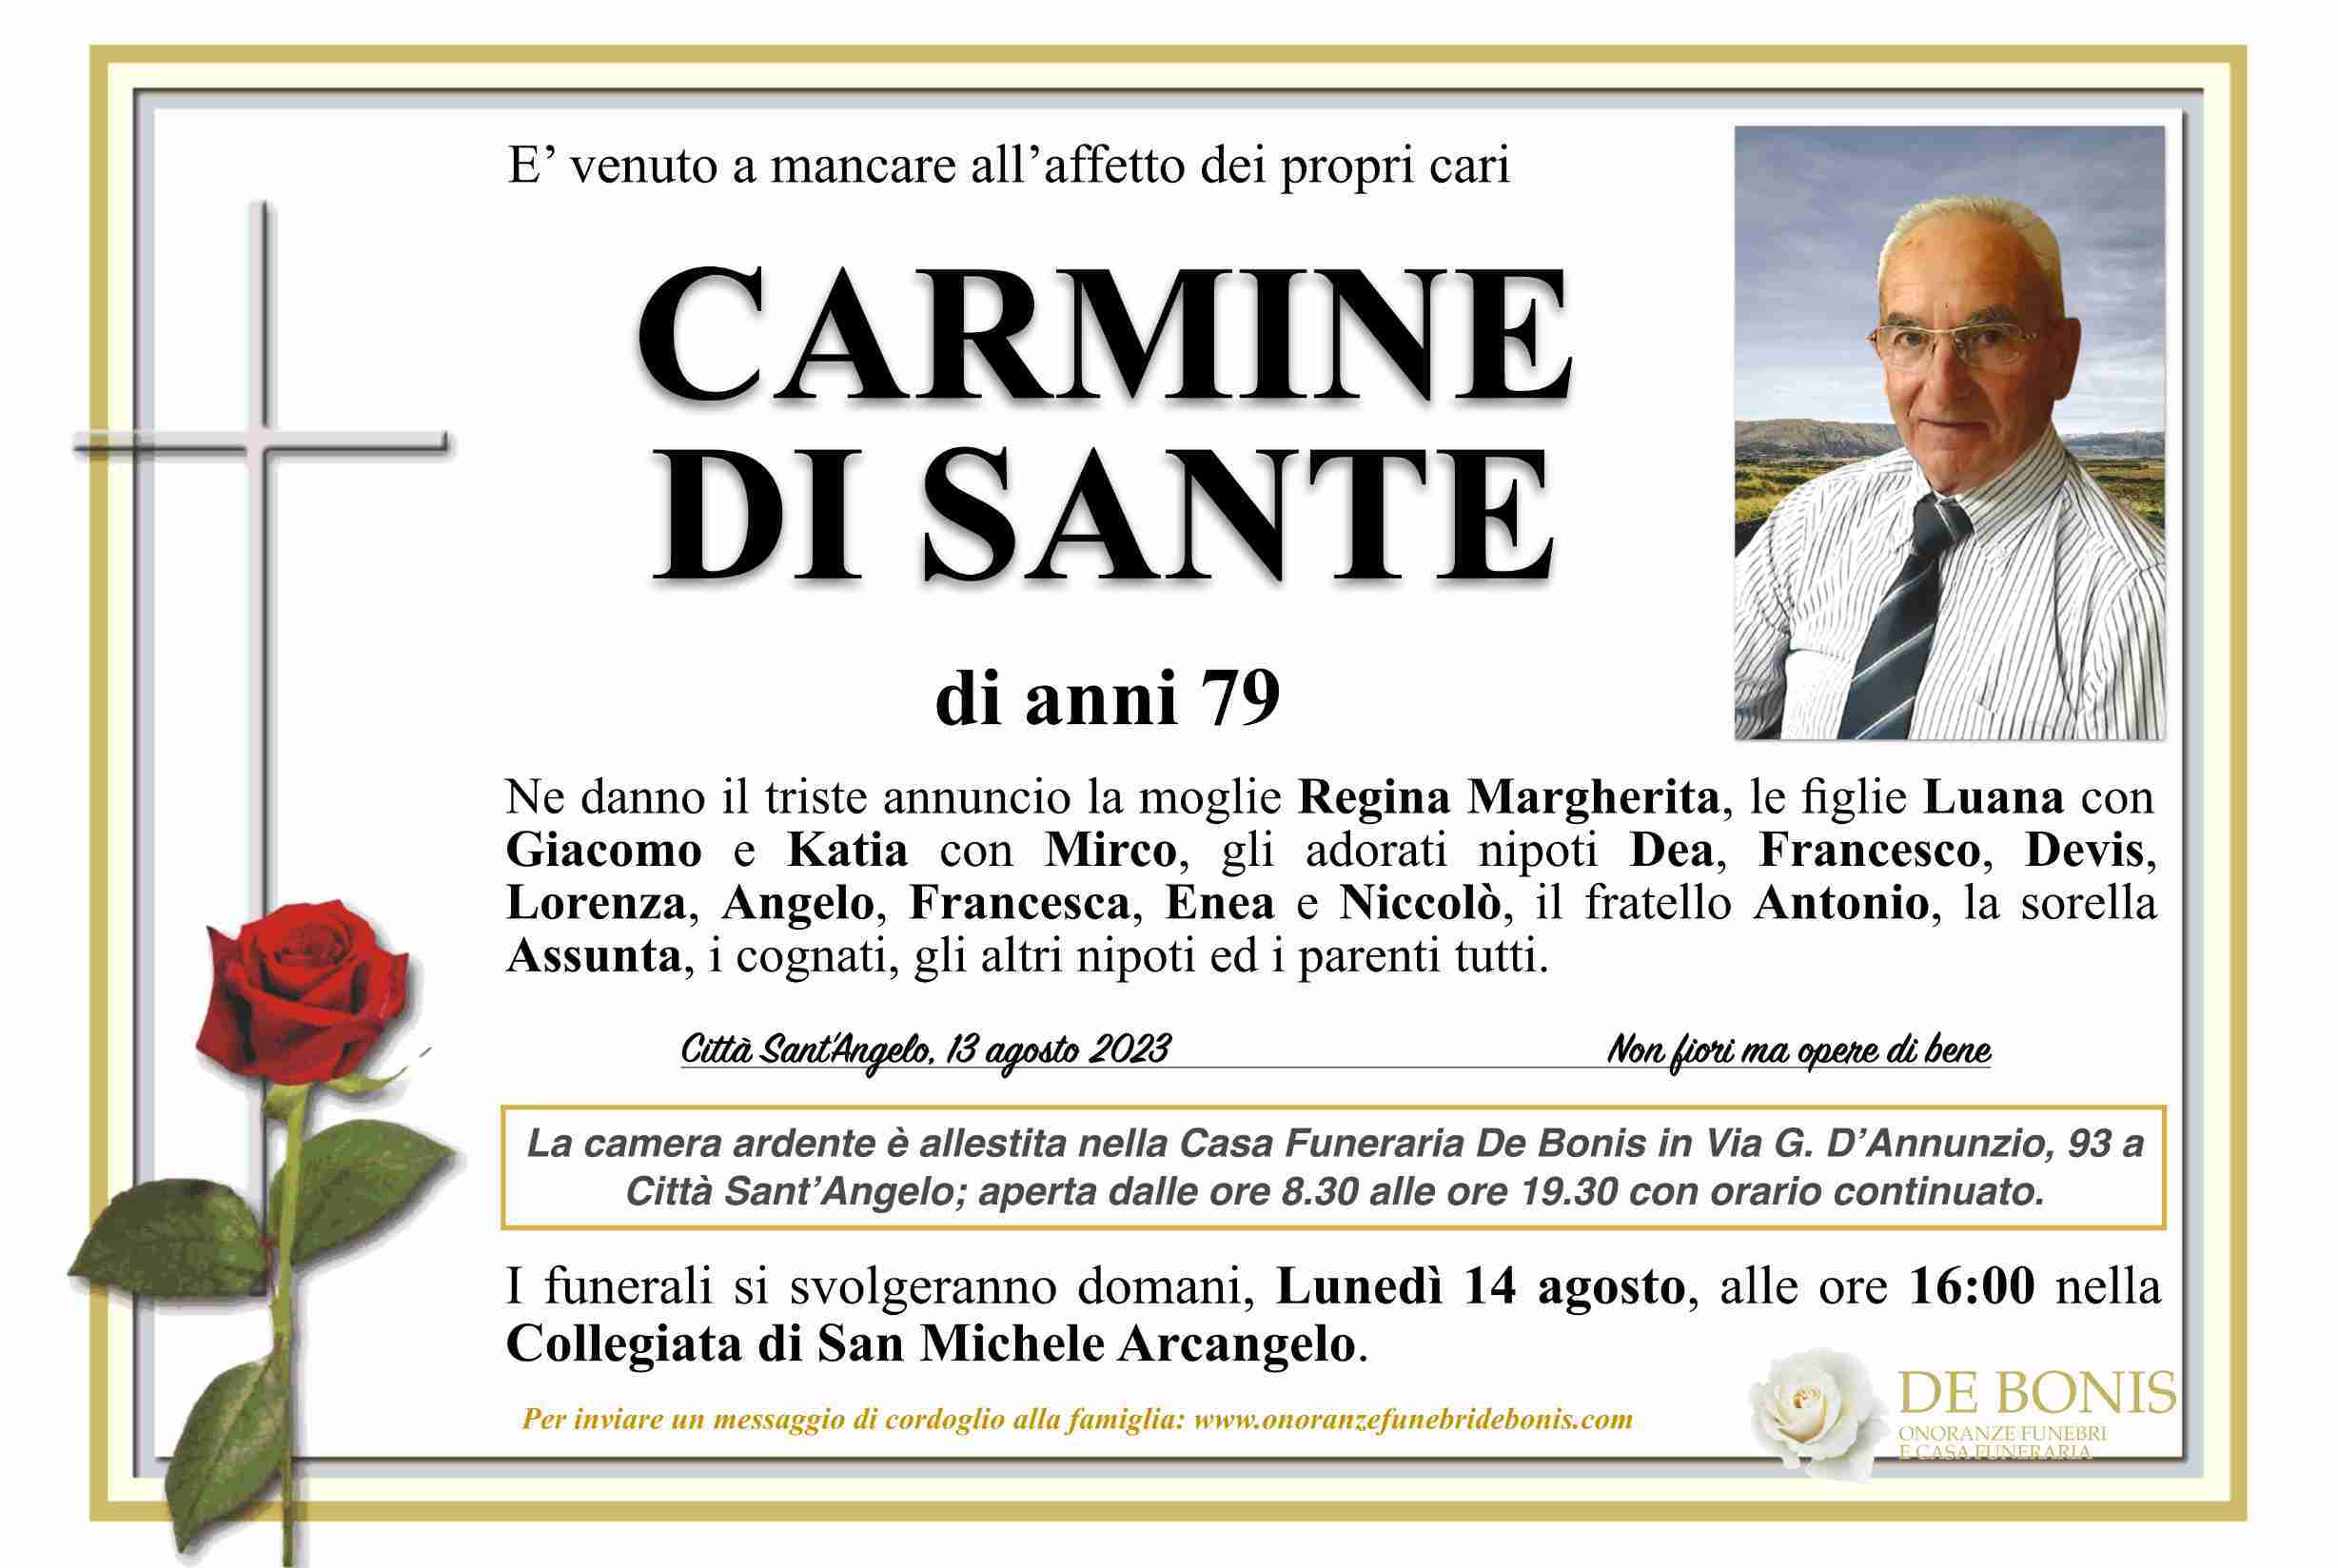 Carmine Di Sante